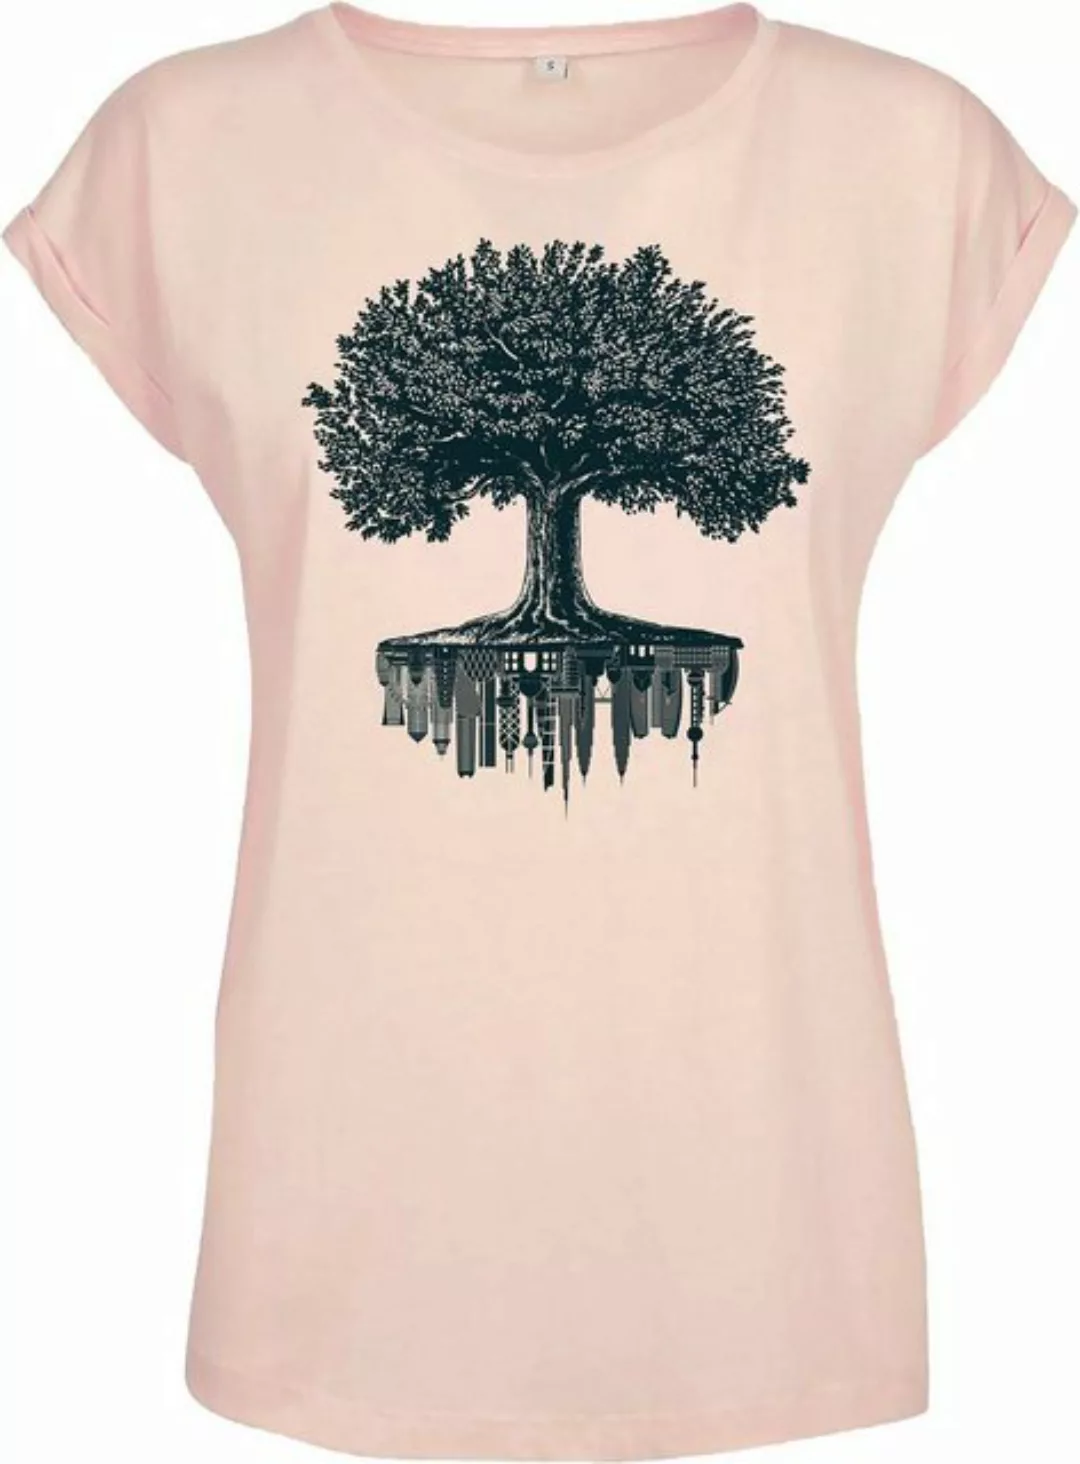 Baddery Print-Shirt Garten T-Shirt Damen: "Forest City" - Wald Natur Baum, günstig online kaufen